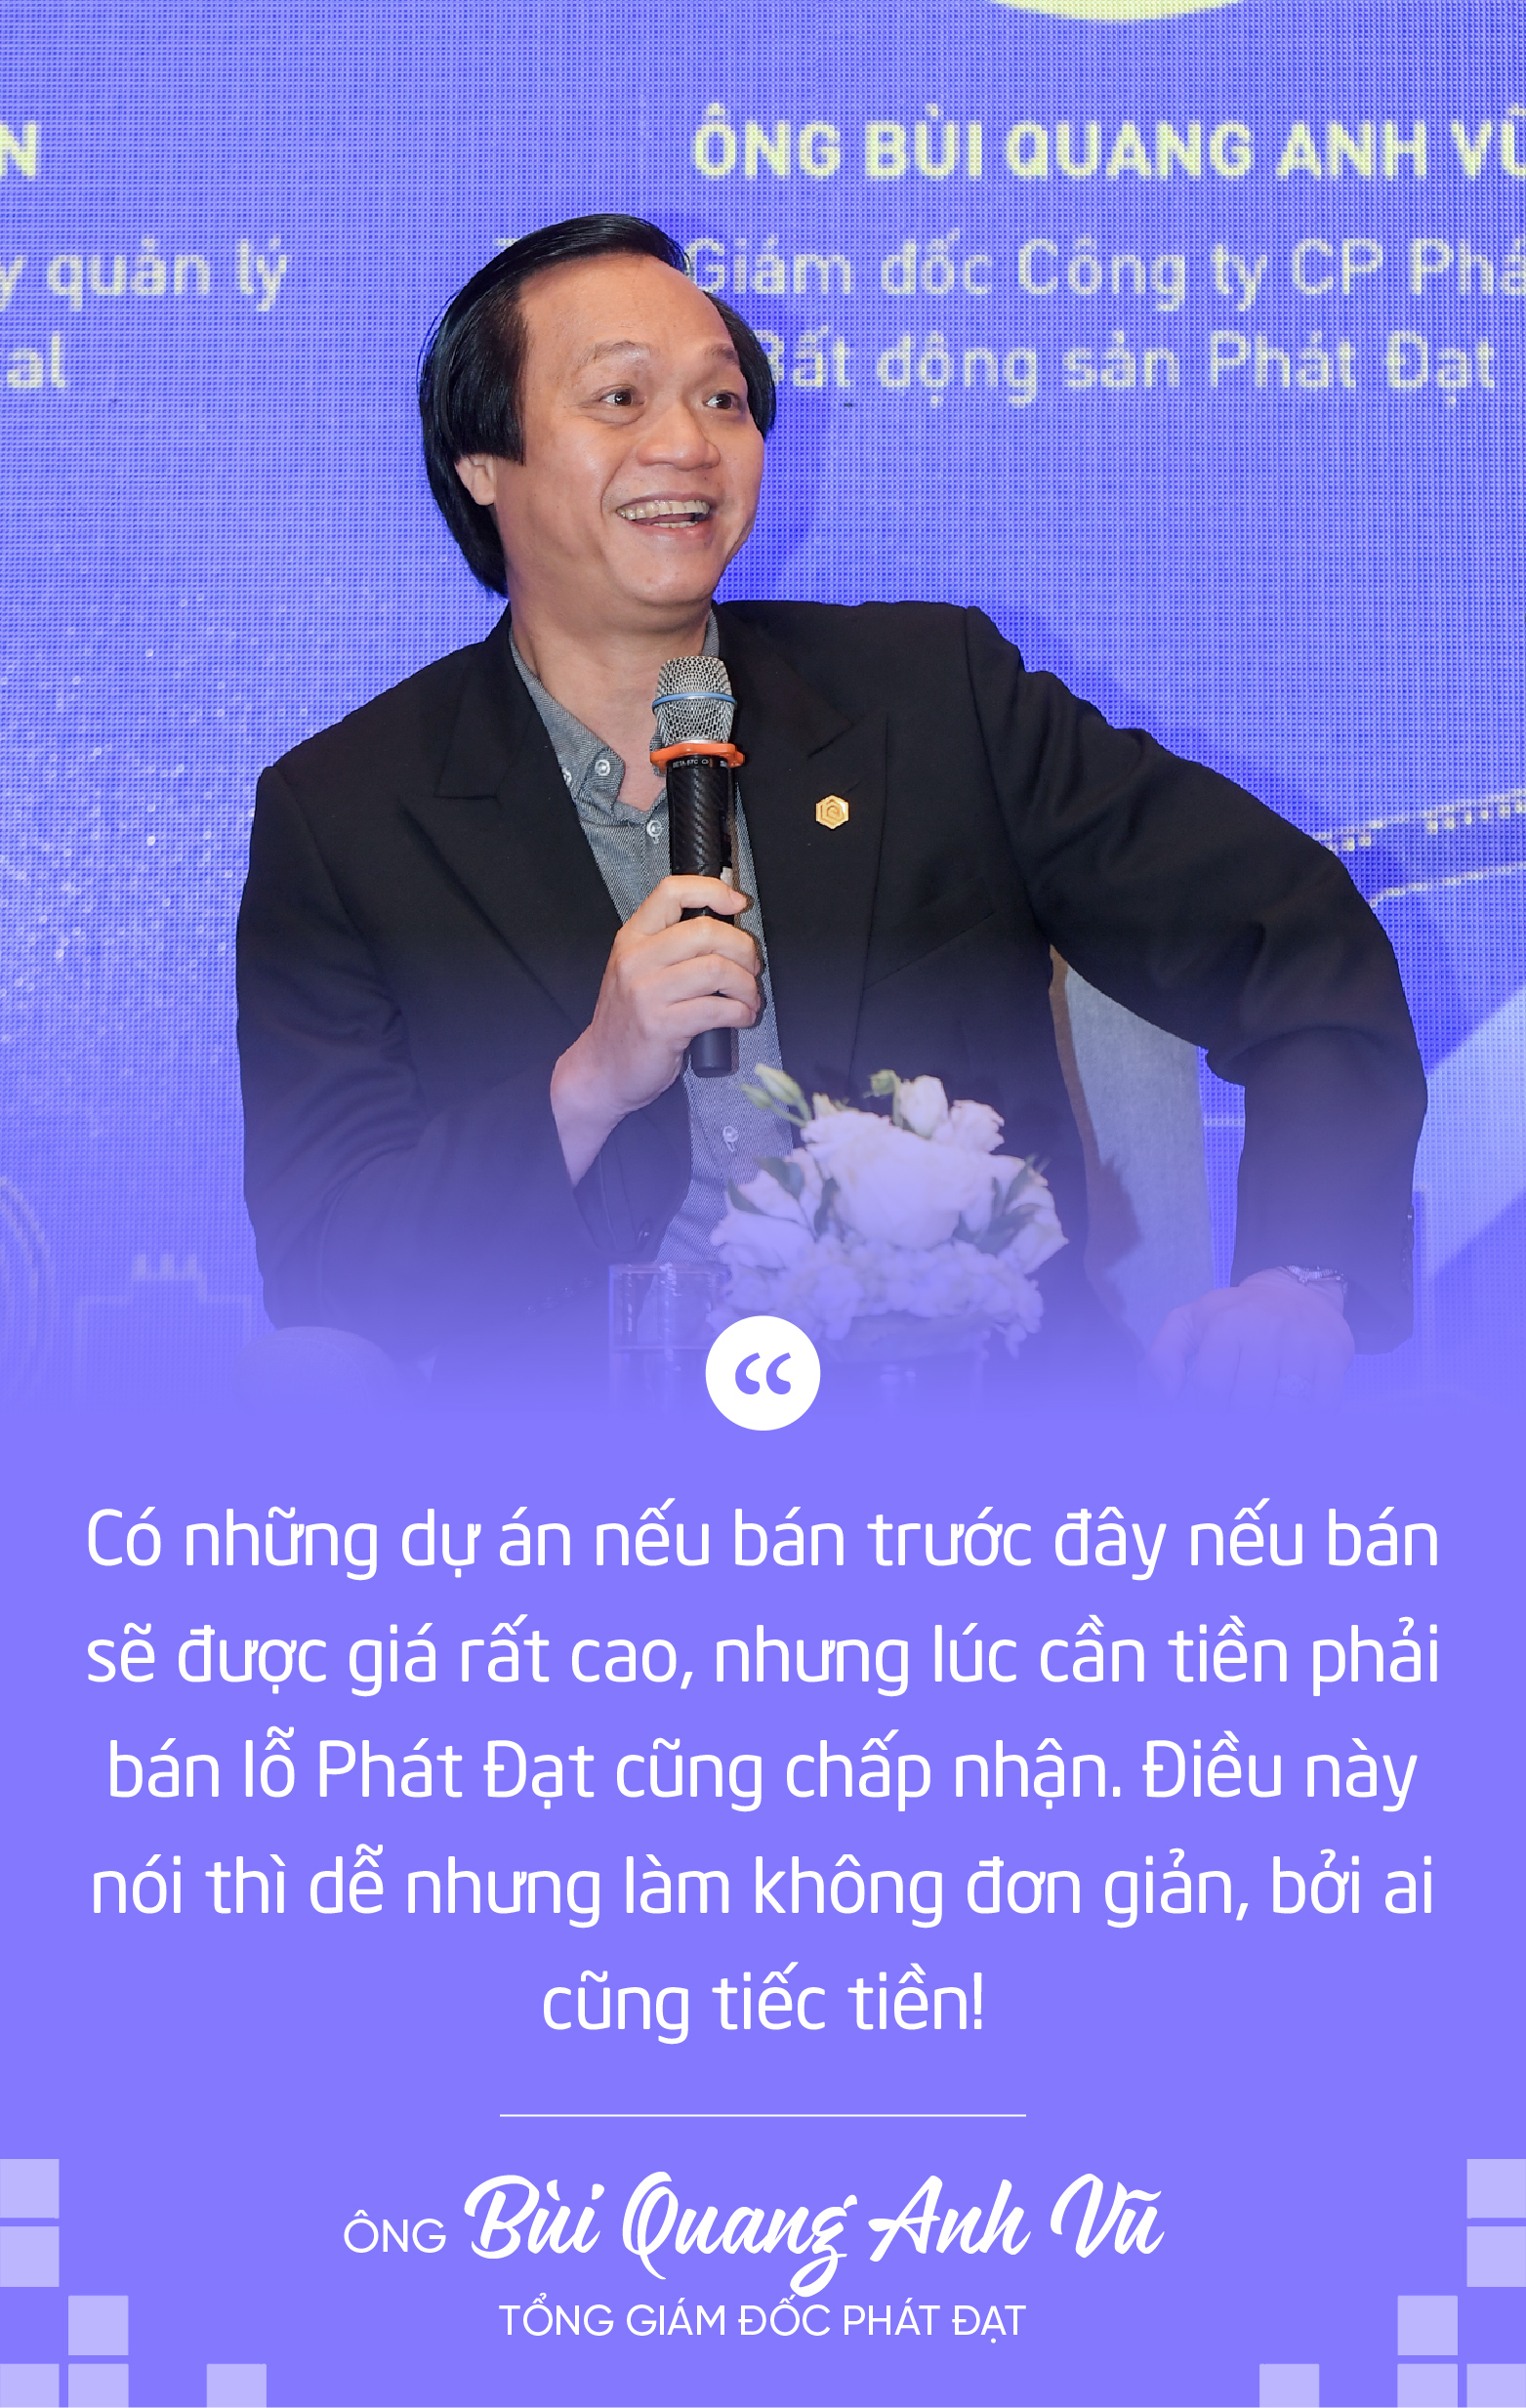 CEO Phát Đạt tiết lộ bí quyết giúp doanh nghiệp vượt qua khó khăn nhưng không phải ai cũng dám làm vì tiếc tiền- Ảnh 1.